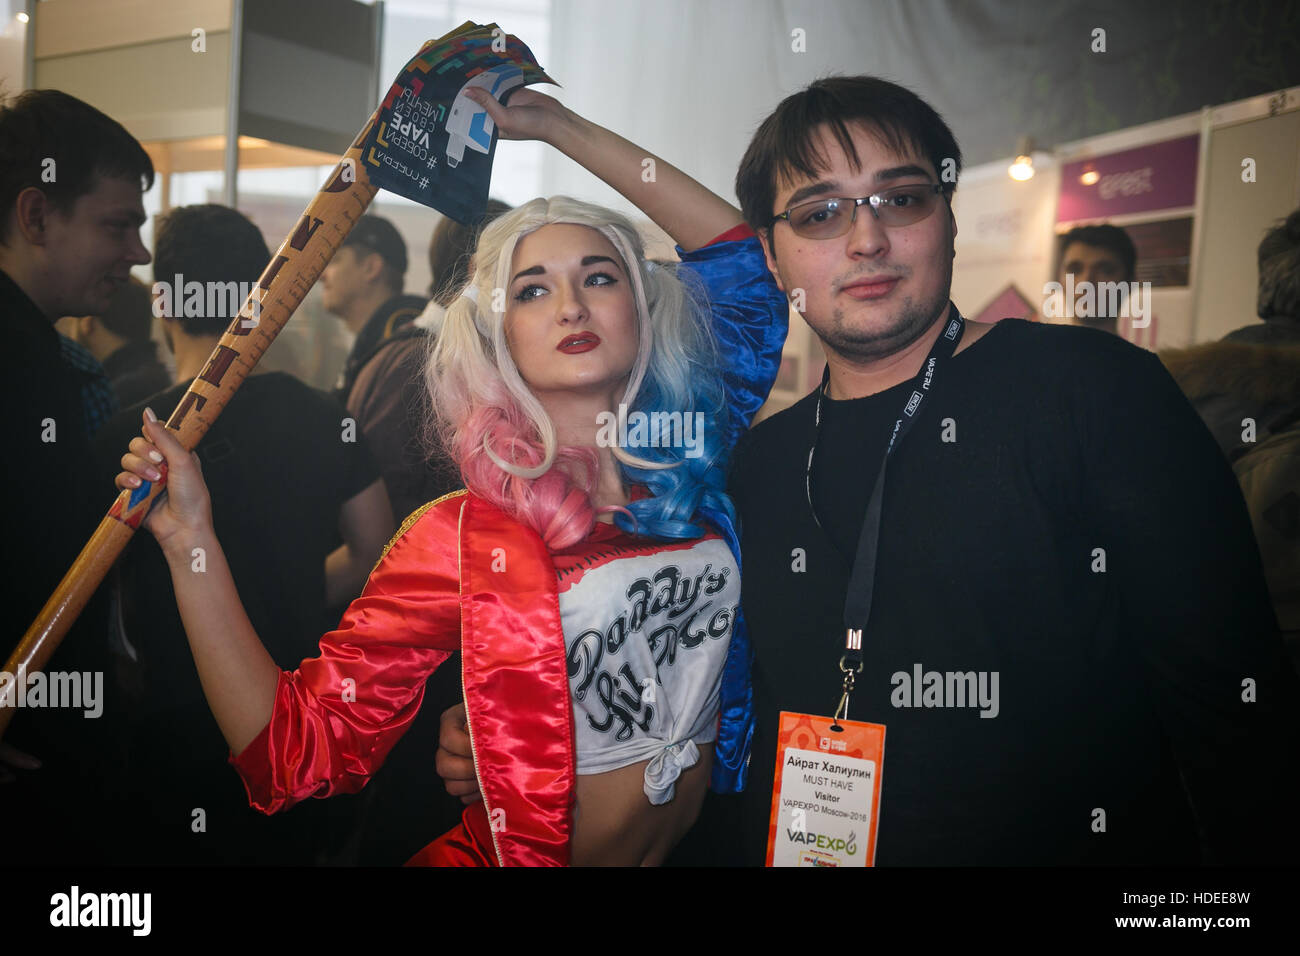 Moskau - 9. Dezember 2016: International Vape Expo.Cosplay Schauspieler arbeitest du Ausstellung Werbung Vaper Flüssigkeit und Dampfen Geräte zum Verkauf. Junges Mädchen in Stockfoto